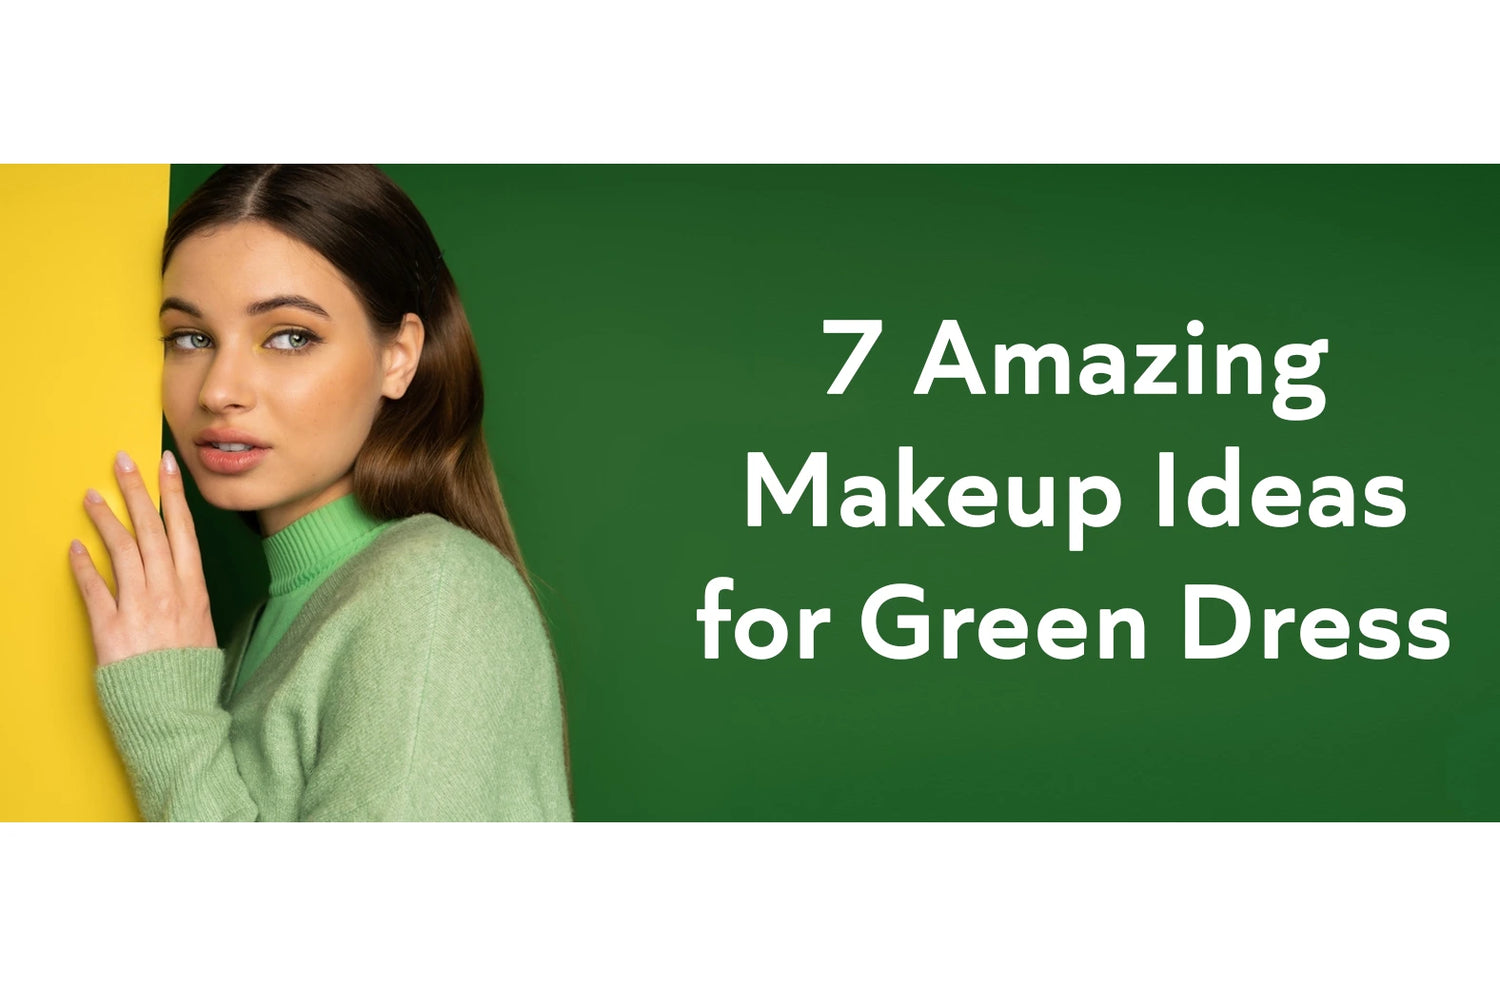 Makeup Ideas for Green Dress